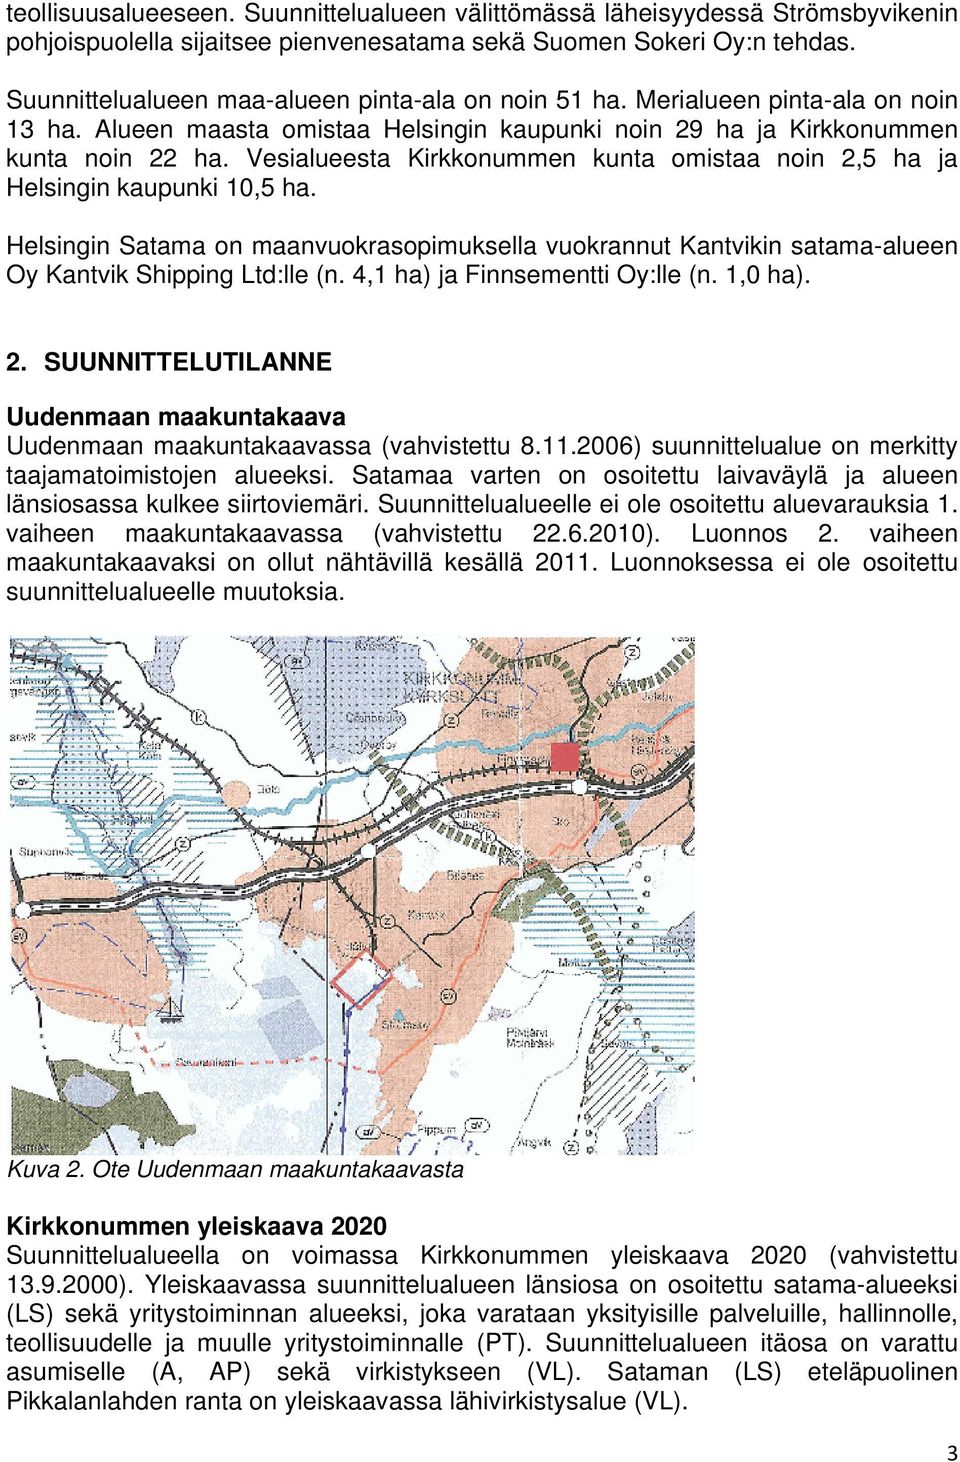 Vesialueesta Kirkkonummen kunta omistaa noin 2,5 ha ja Helsingin kaupunki 10,5 ha. Helsingin Satama on maanvuokrasopimuksella vuokrannut Kantvikin satama-alueen Oy Kantvik Shipping Ltd:lle (n.